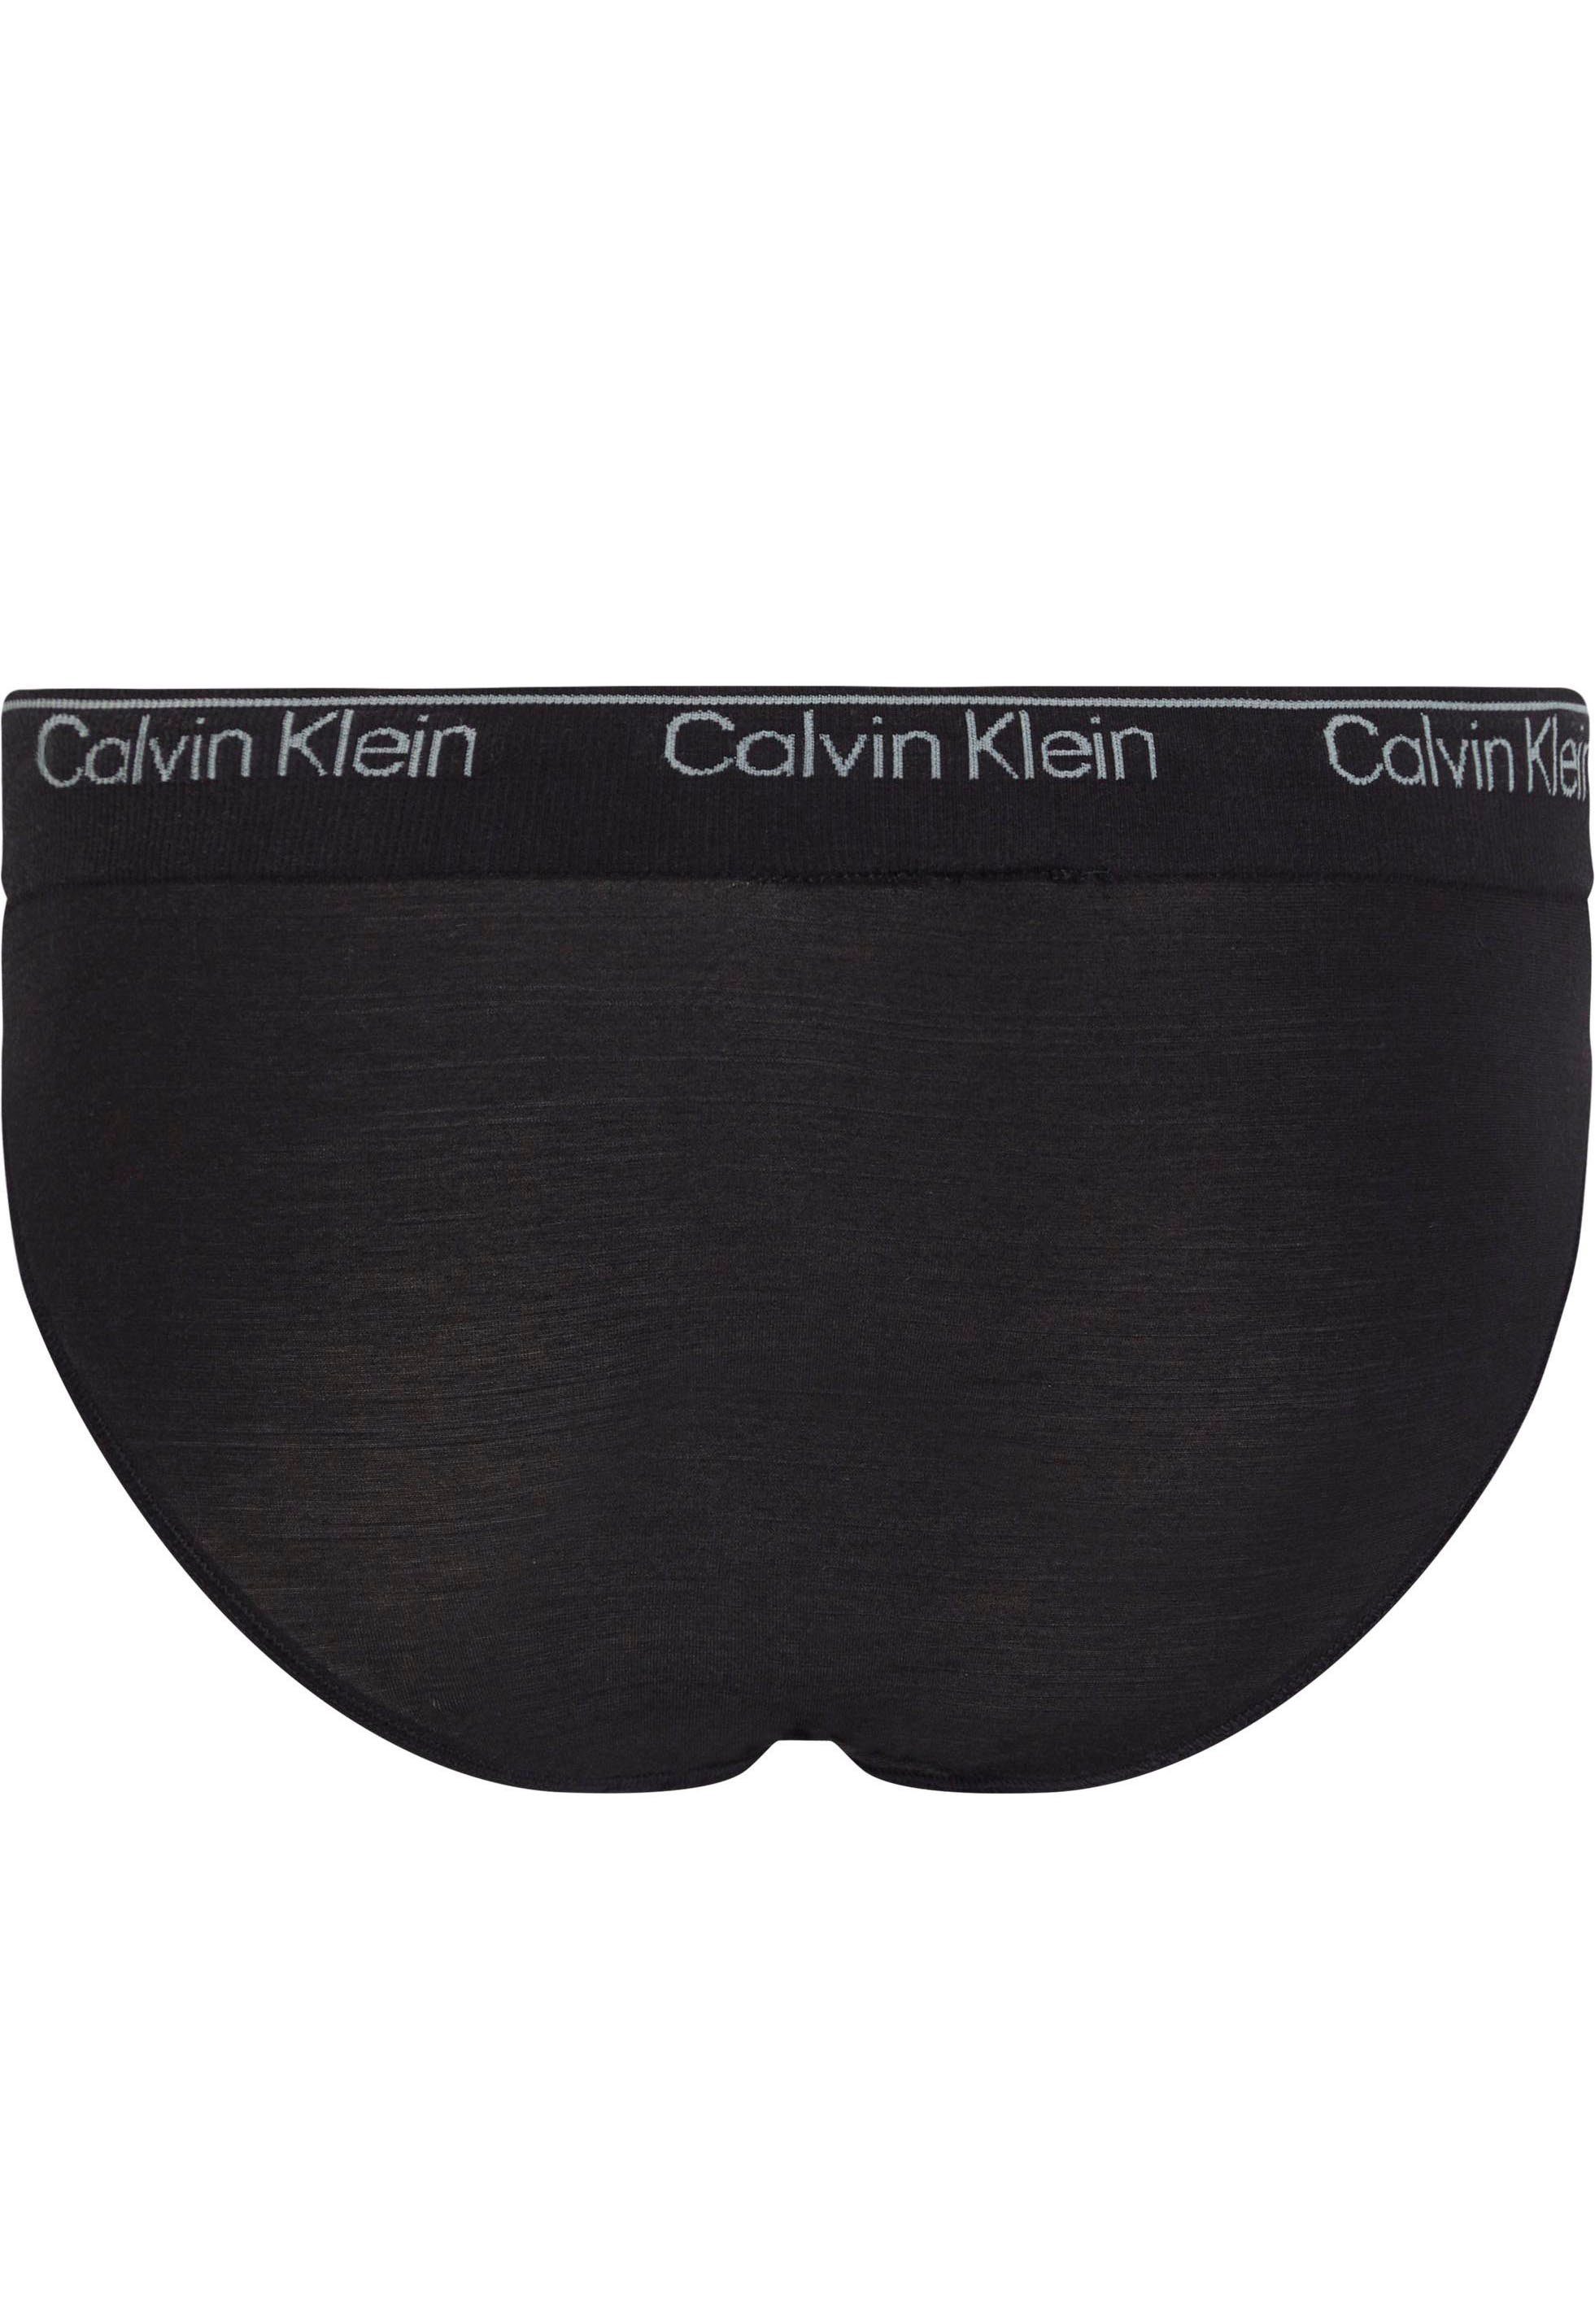 Klein am CK-Logo Bund schwarz mit BIKINI Bikinislip Underwear Calvin